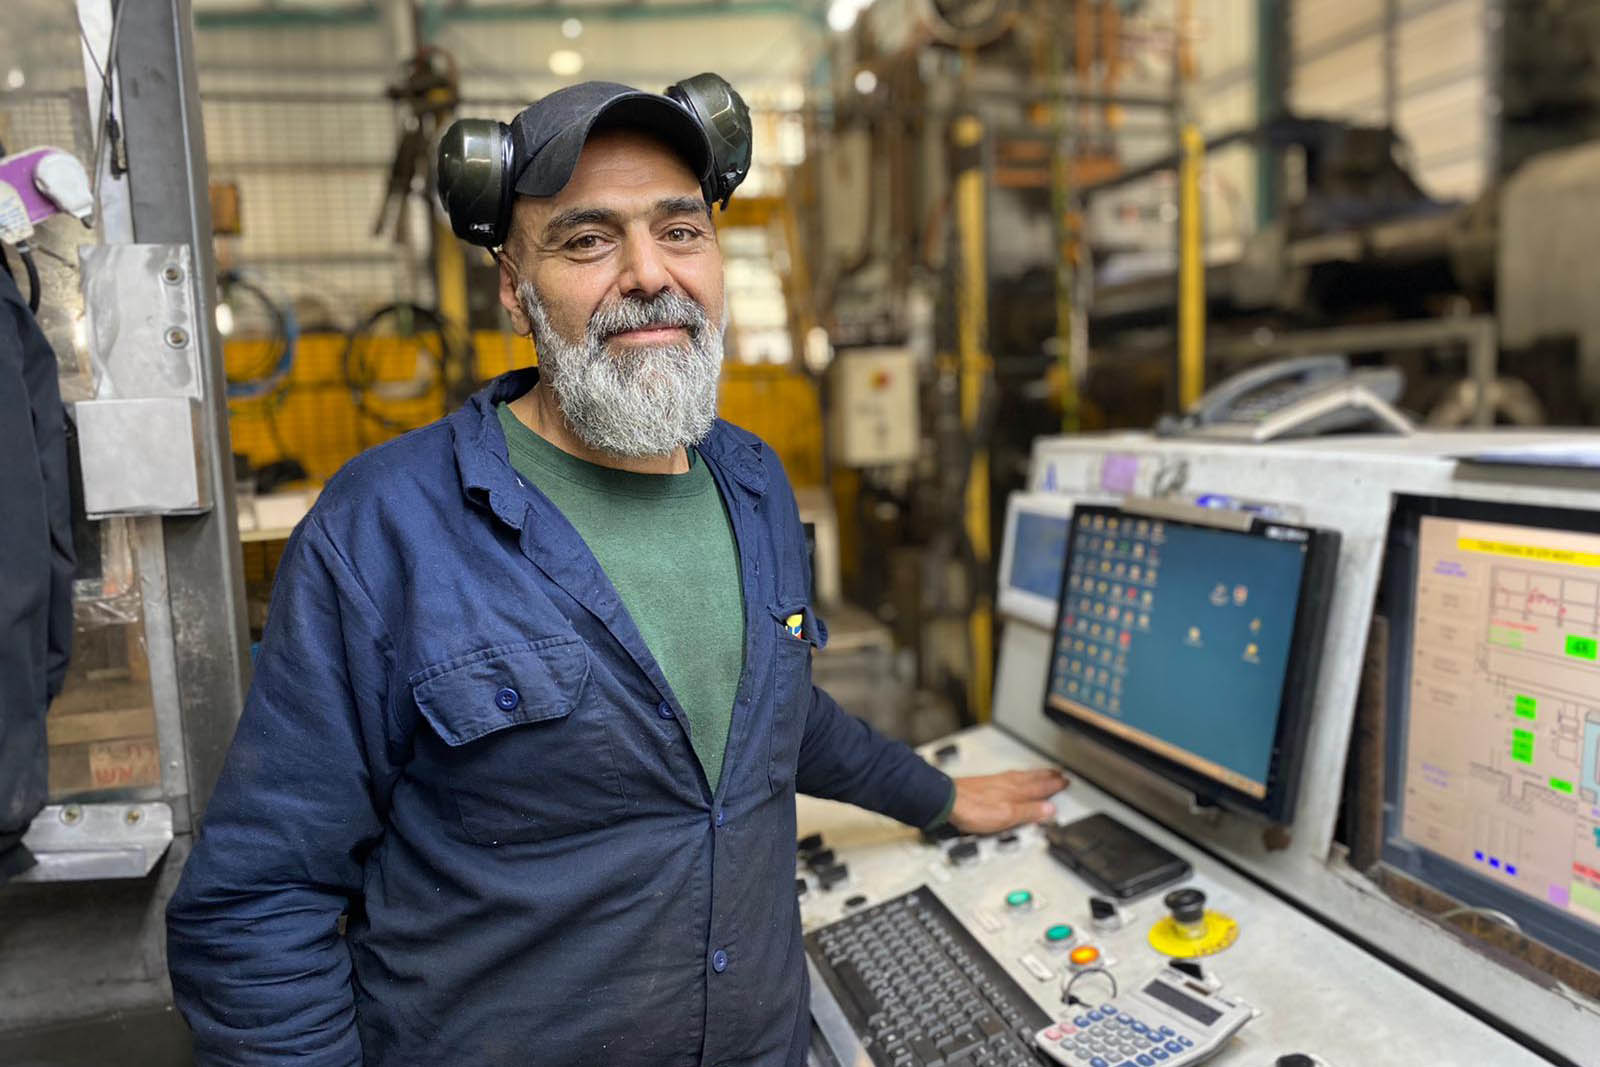 עבדאללה מוחמד מנהריה, מפקד על המכונה שמייצרת את פרופיל האלומיניום (צילום: יעל אלנתן)